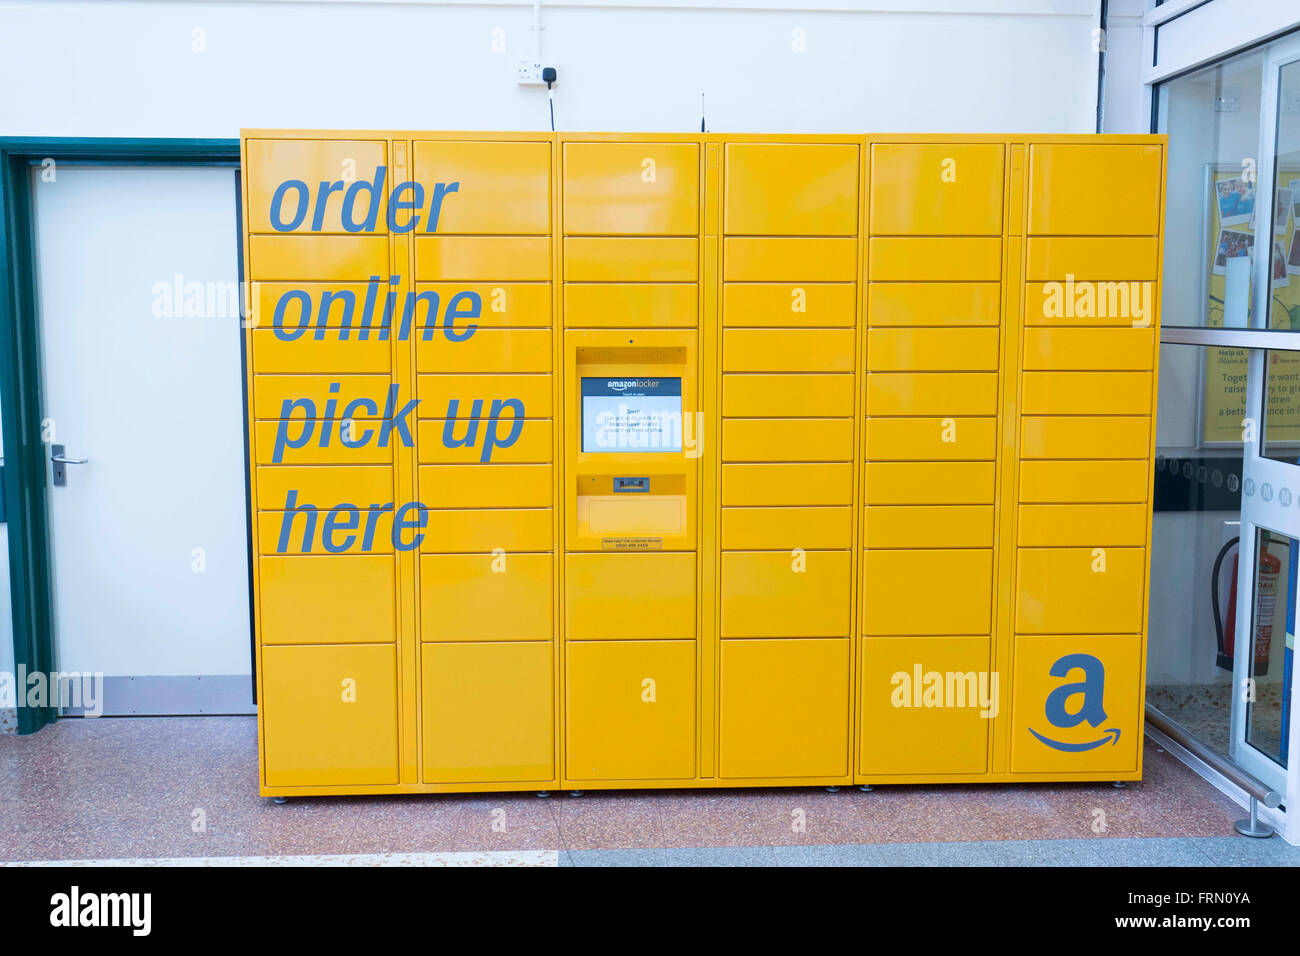 Amazon Online-Bestellung abholen Sammelstelle in einem Safeway-Supermarkt  Stockfotografie - Alamy